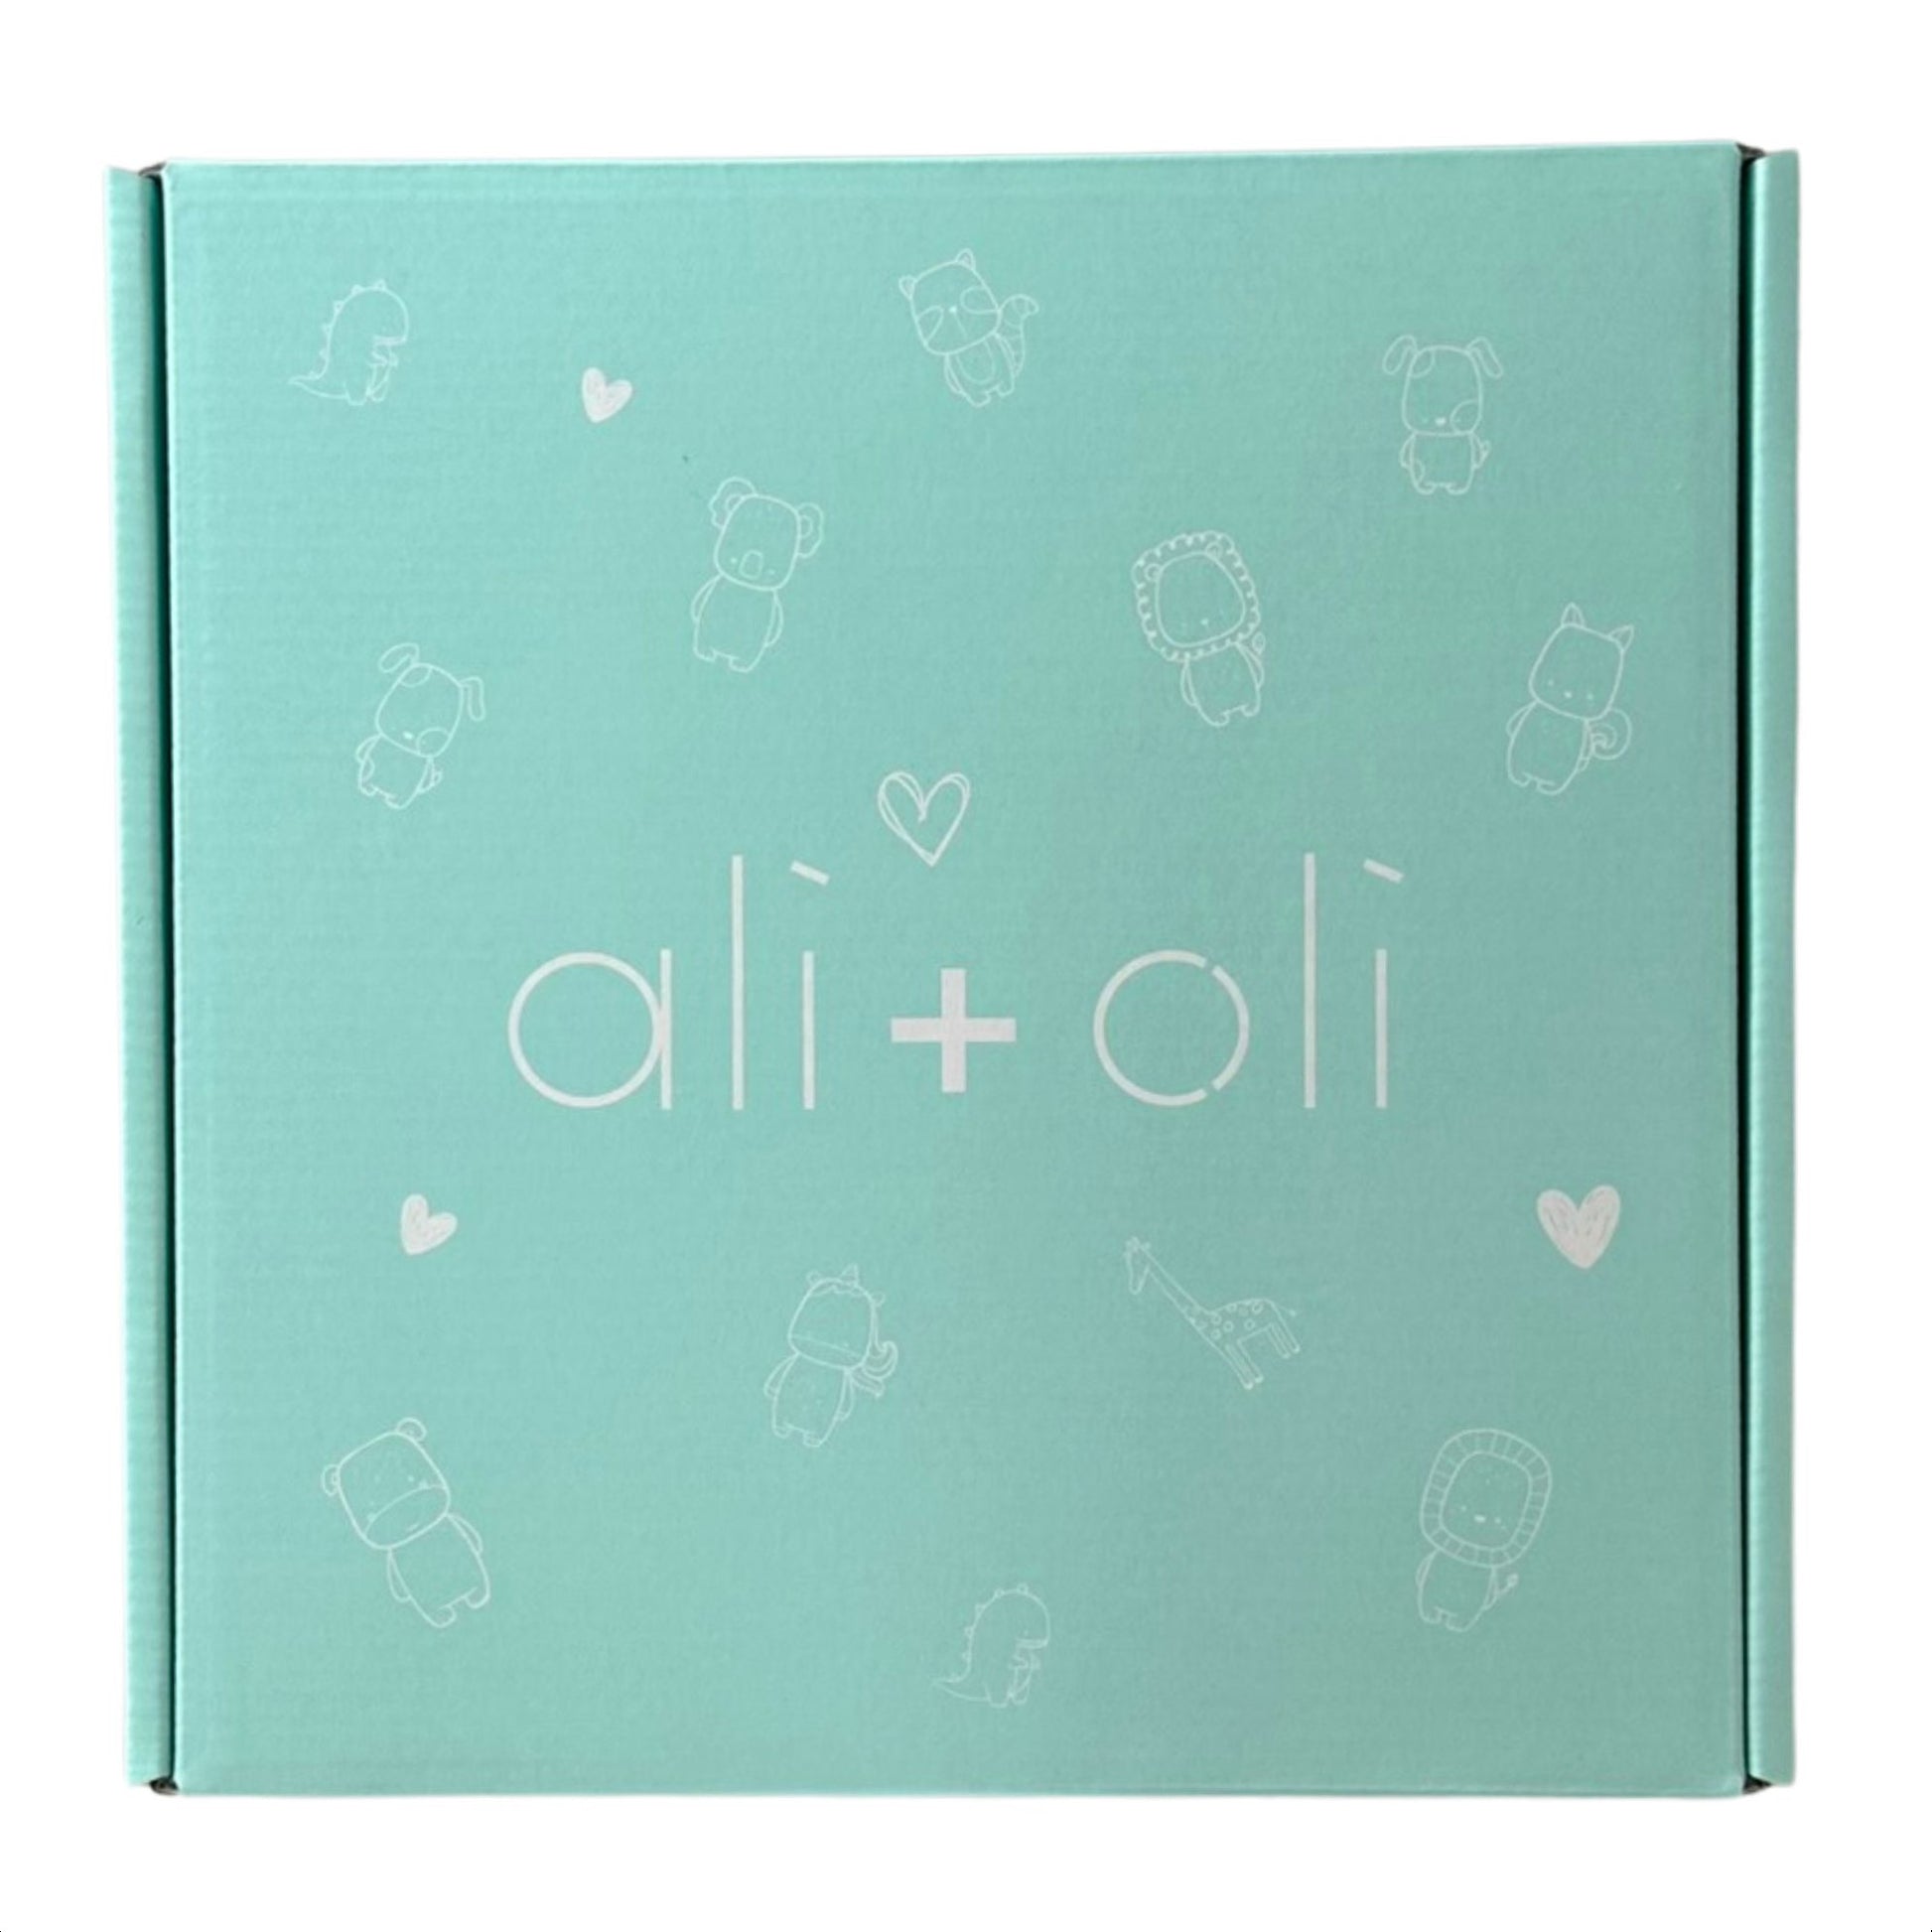 Cute Custom Ali + Oli Gift Box for Baby